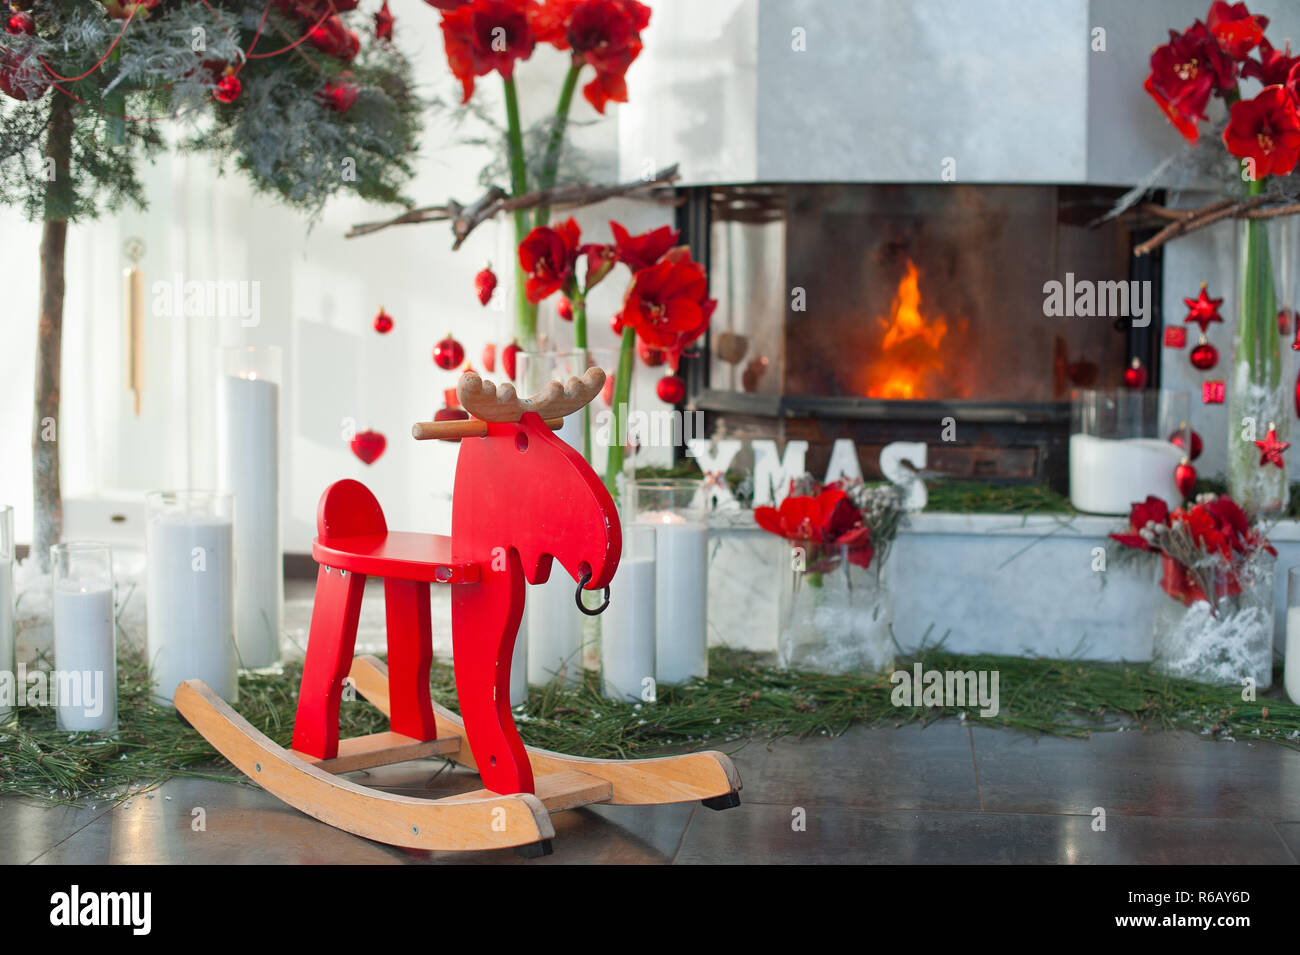 Kamin Einrichtung mit Kerzen und roten Blüten. Schaukelstuhl. Stockfoto